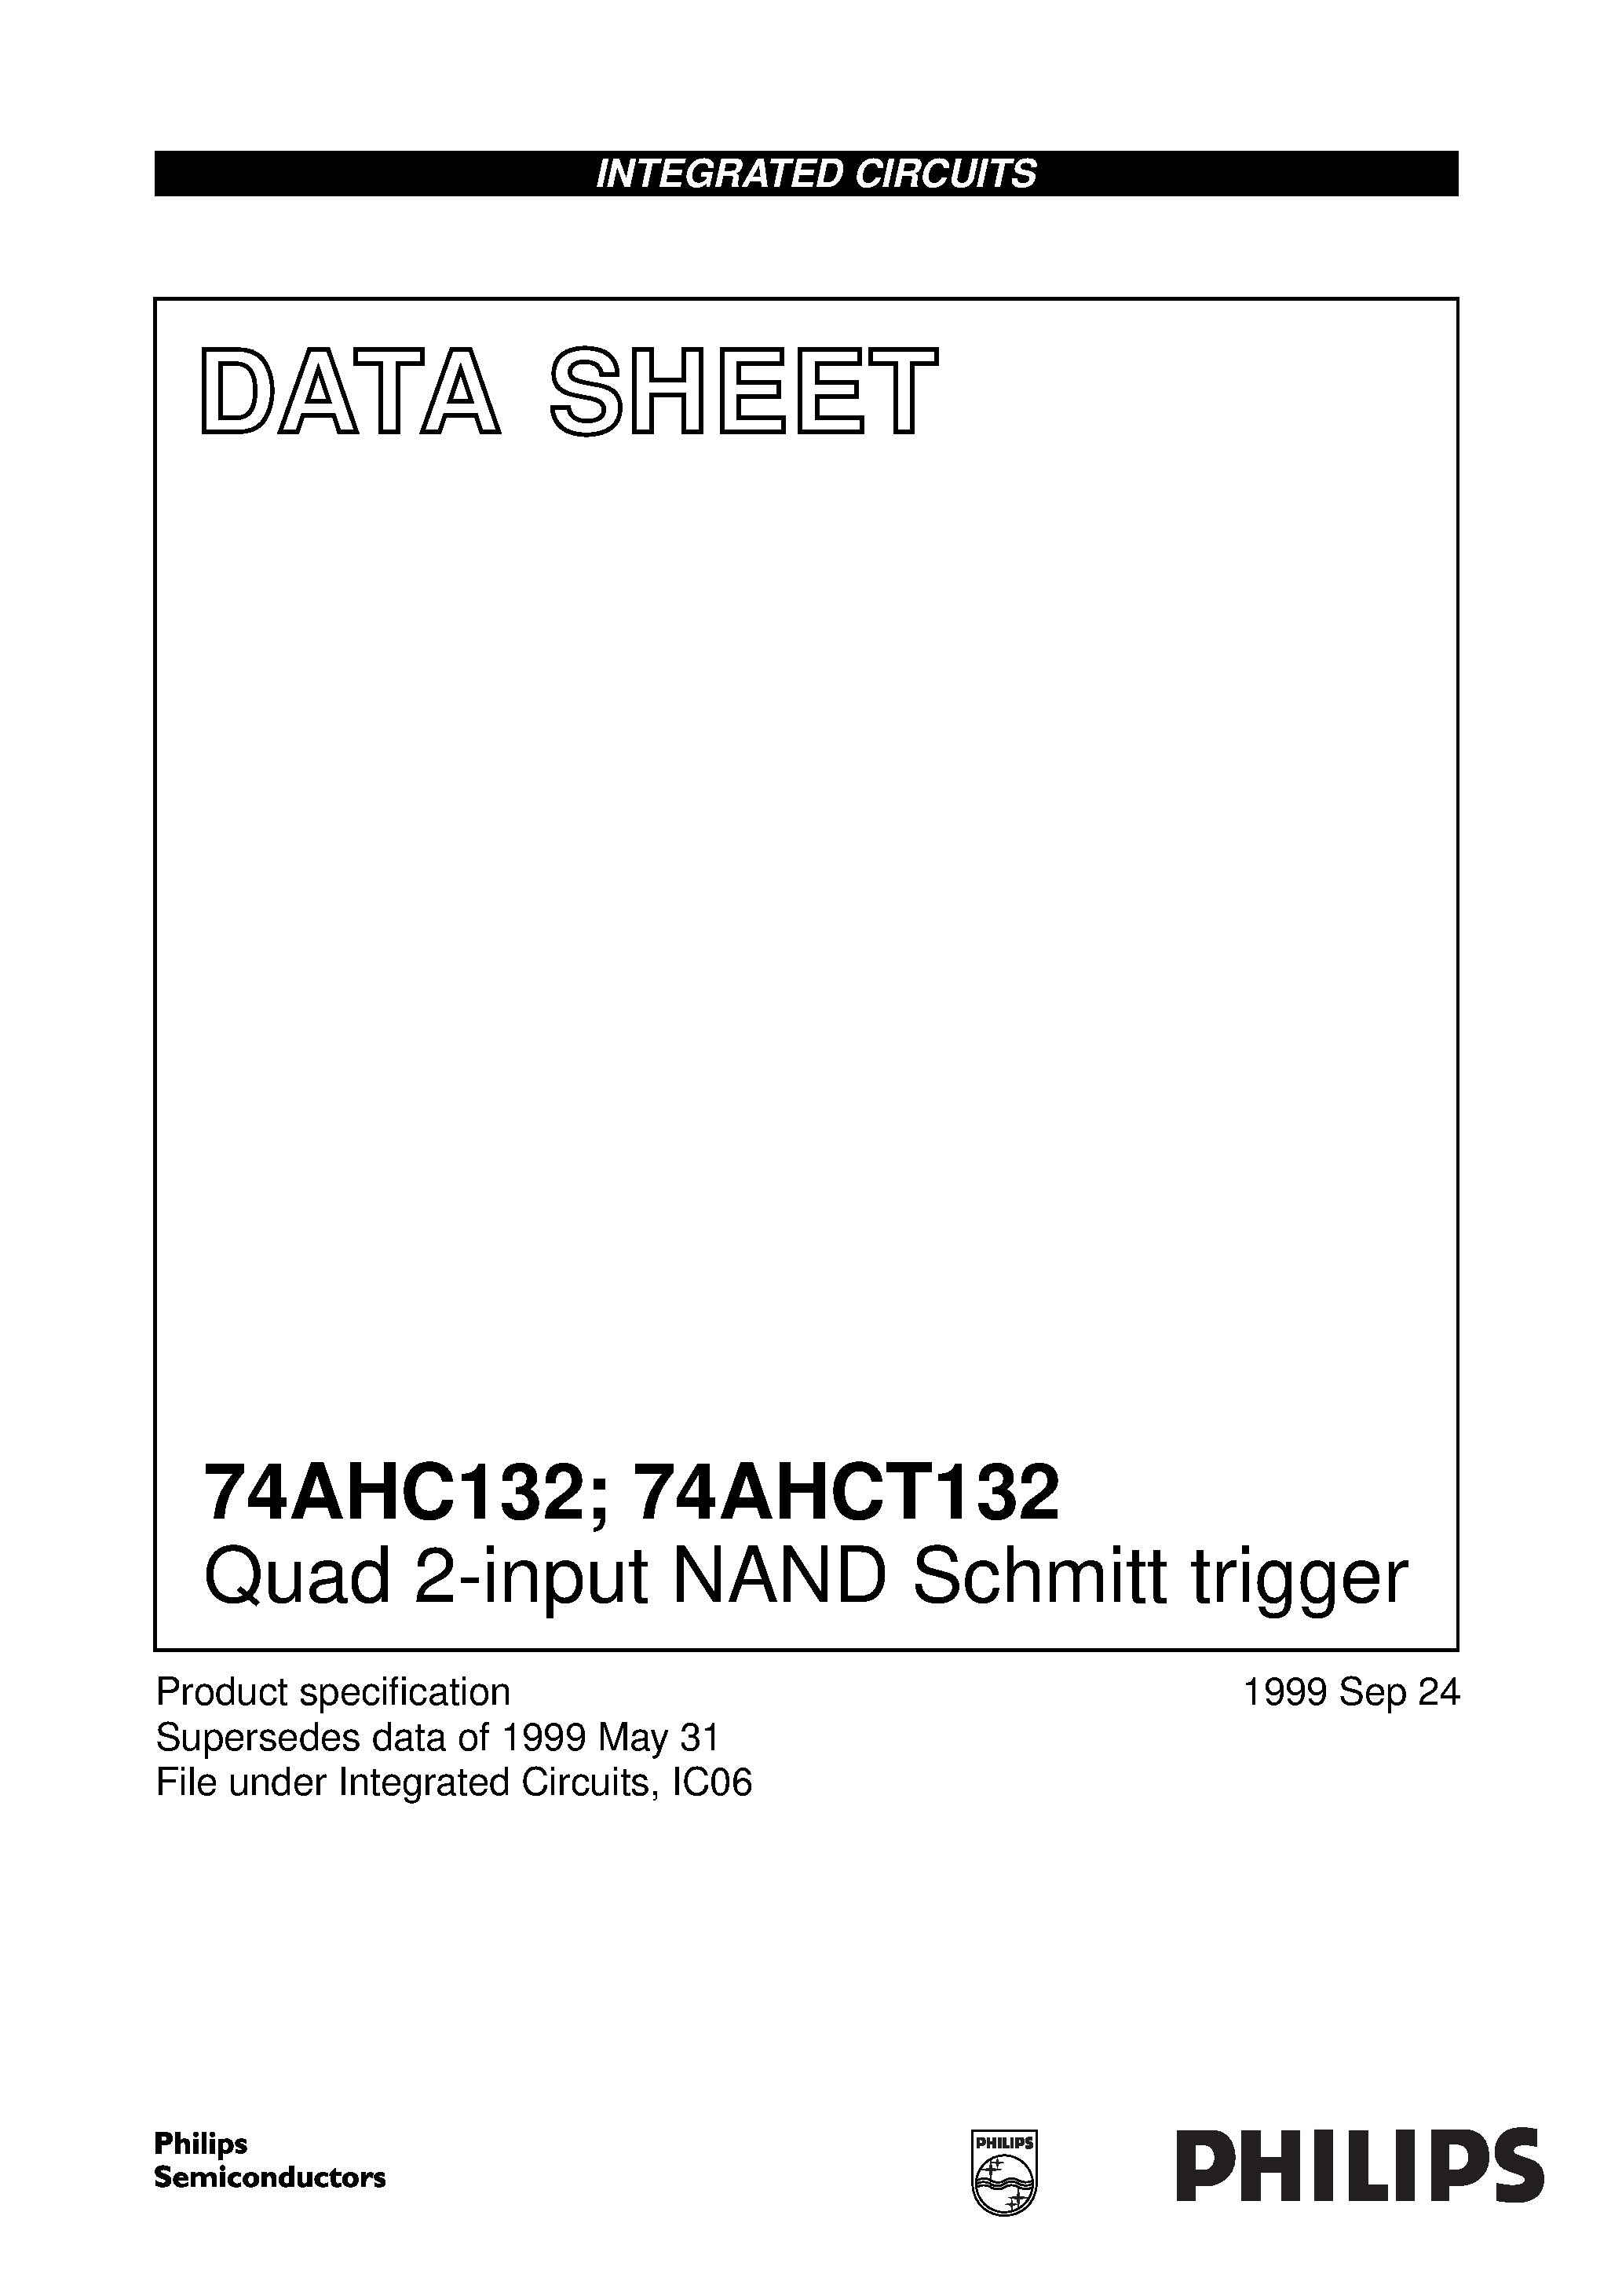 Datasheet 74AHC132PW - Quad 2-input NAND Schmitt trigger page 1